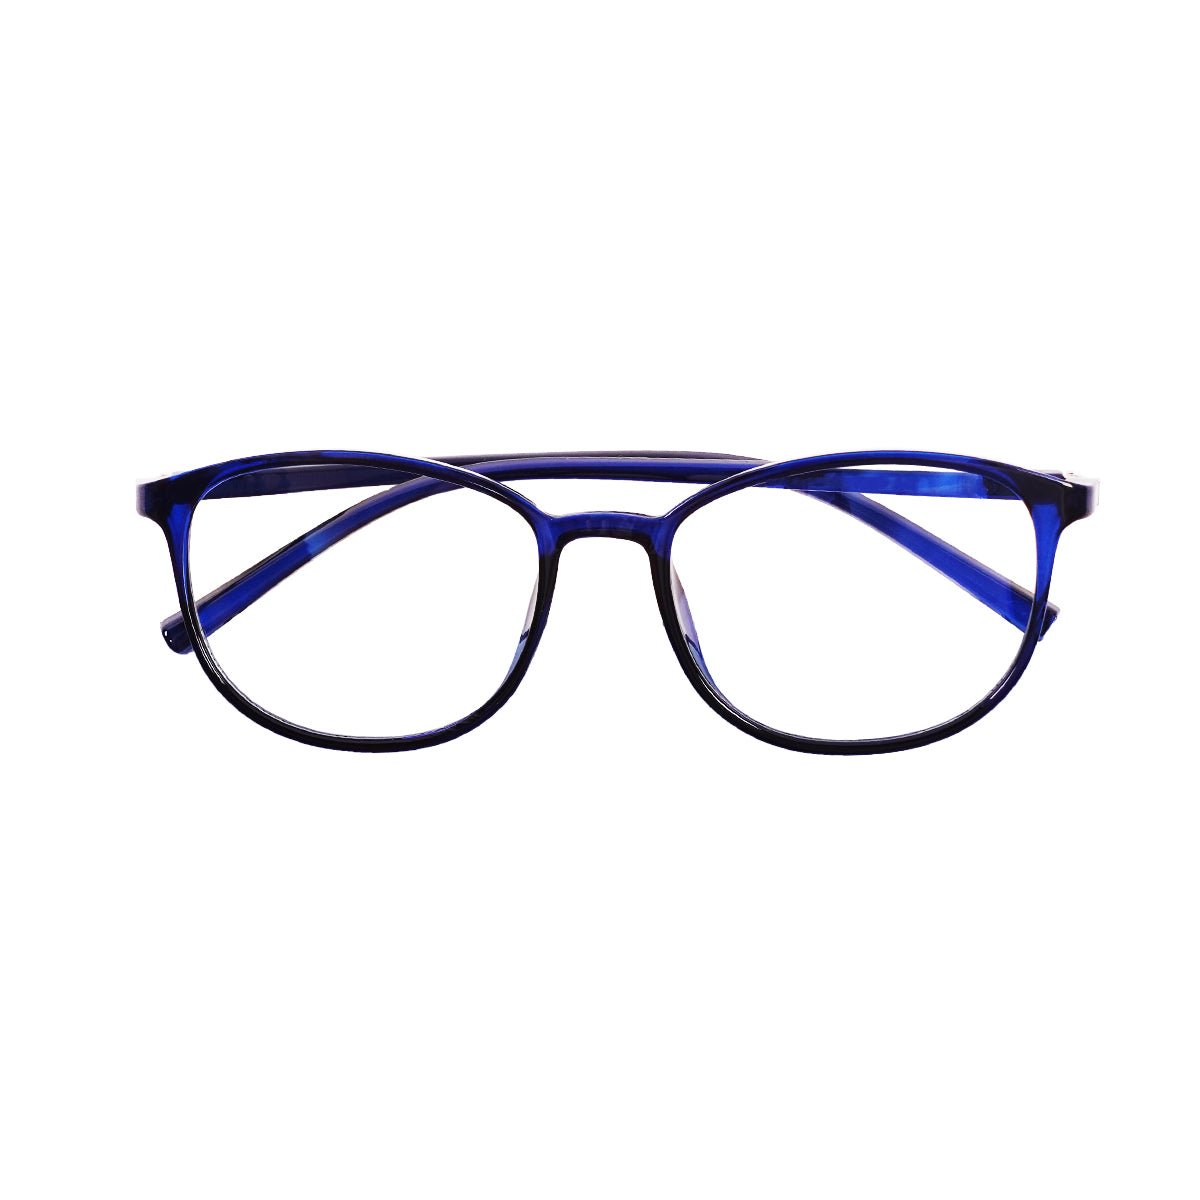 Epic Gamers Glasses V2 - Blue - Store 974 | ستور ٩٧٤